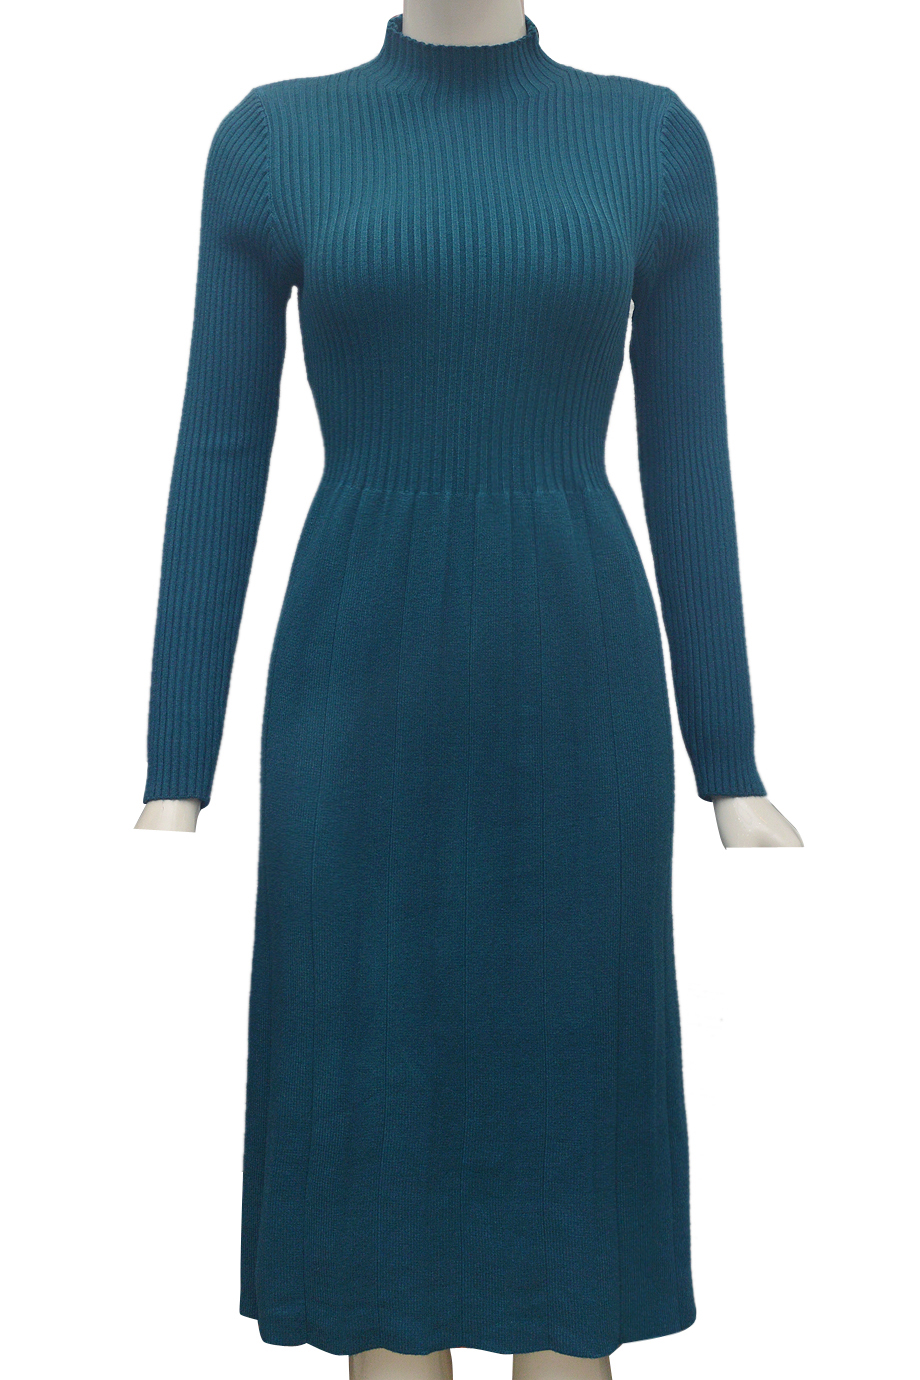 Đồng Phục Công Sở- Chân váy nữ màu xanh dương 112 ĐPTB_ Công ty May Đồng  Phục Đẹp, Chất Lượng, Uy Tín